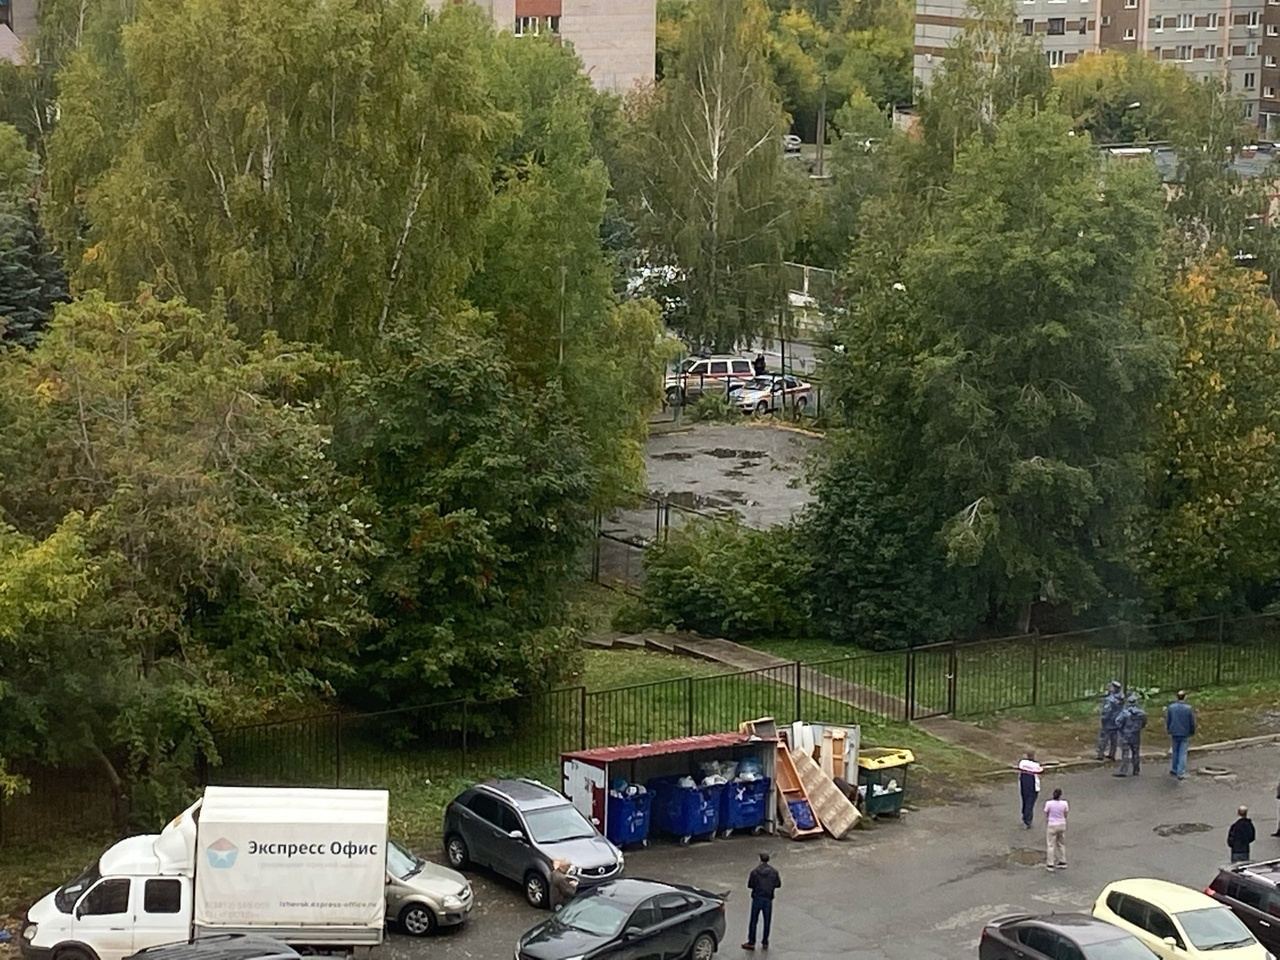 На родине губернатора Алексея Русских трагедия - открыта стрельба по школе в Ижевске, погибли дети